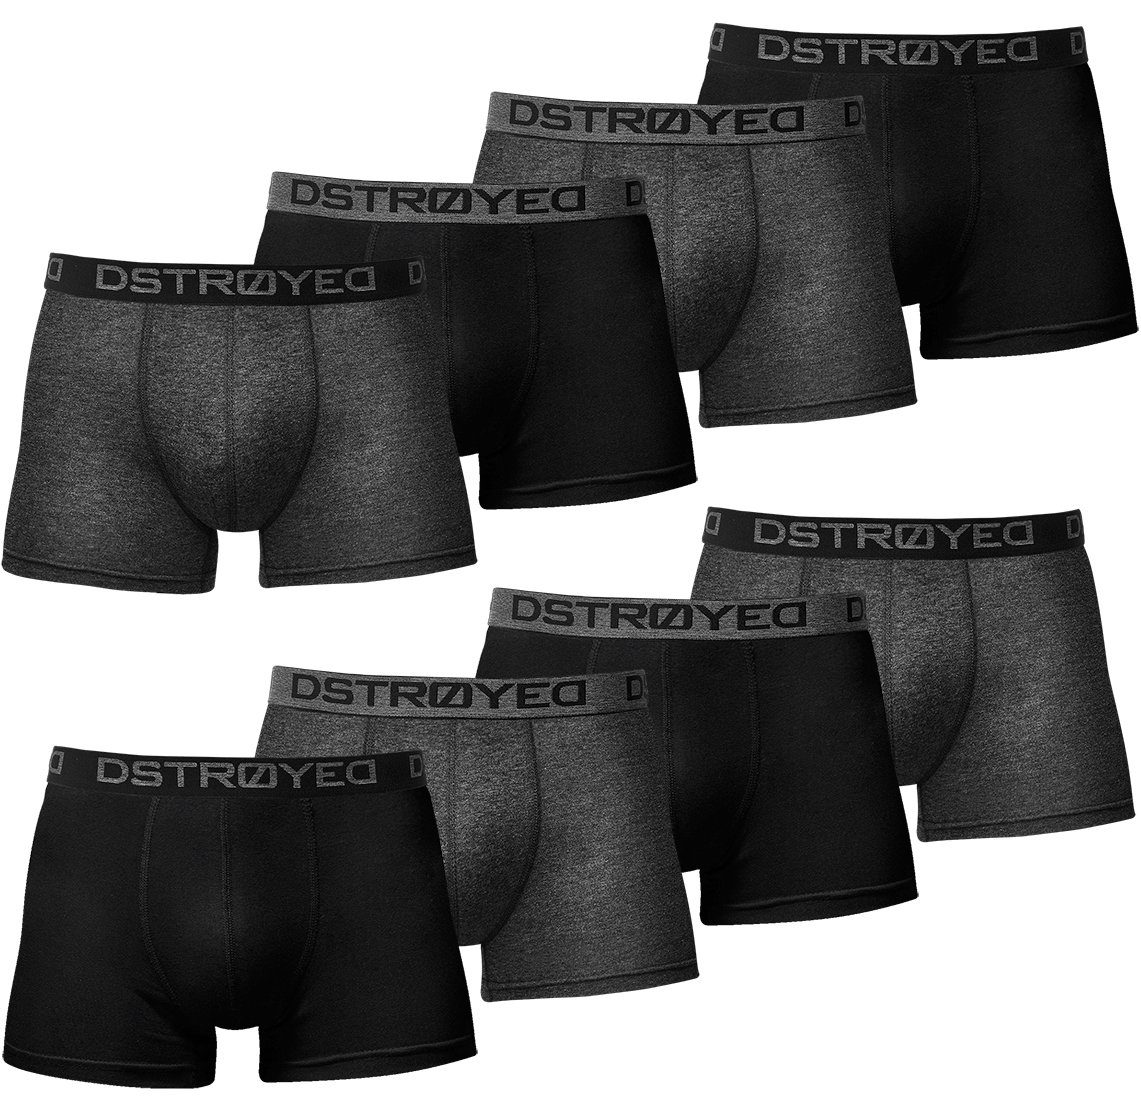 DSTROYED Boxershorts Herren Männer Unterhosen Baumwolle Premium Qualität perfekte Passform (Vorteilspack, 8er, 8er Pack) 316e-schwarz/anthrazit